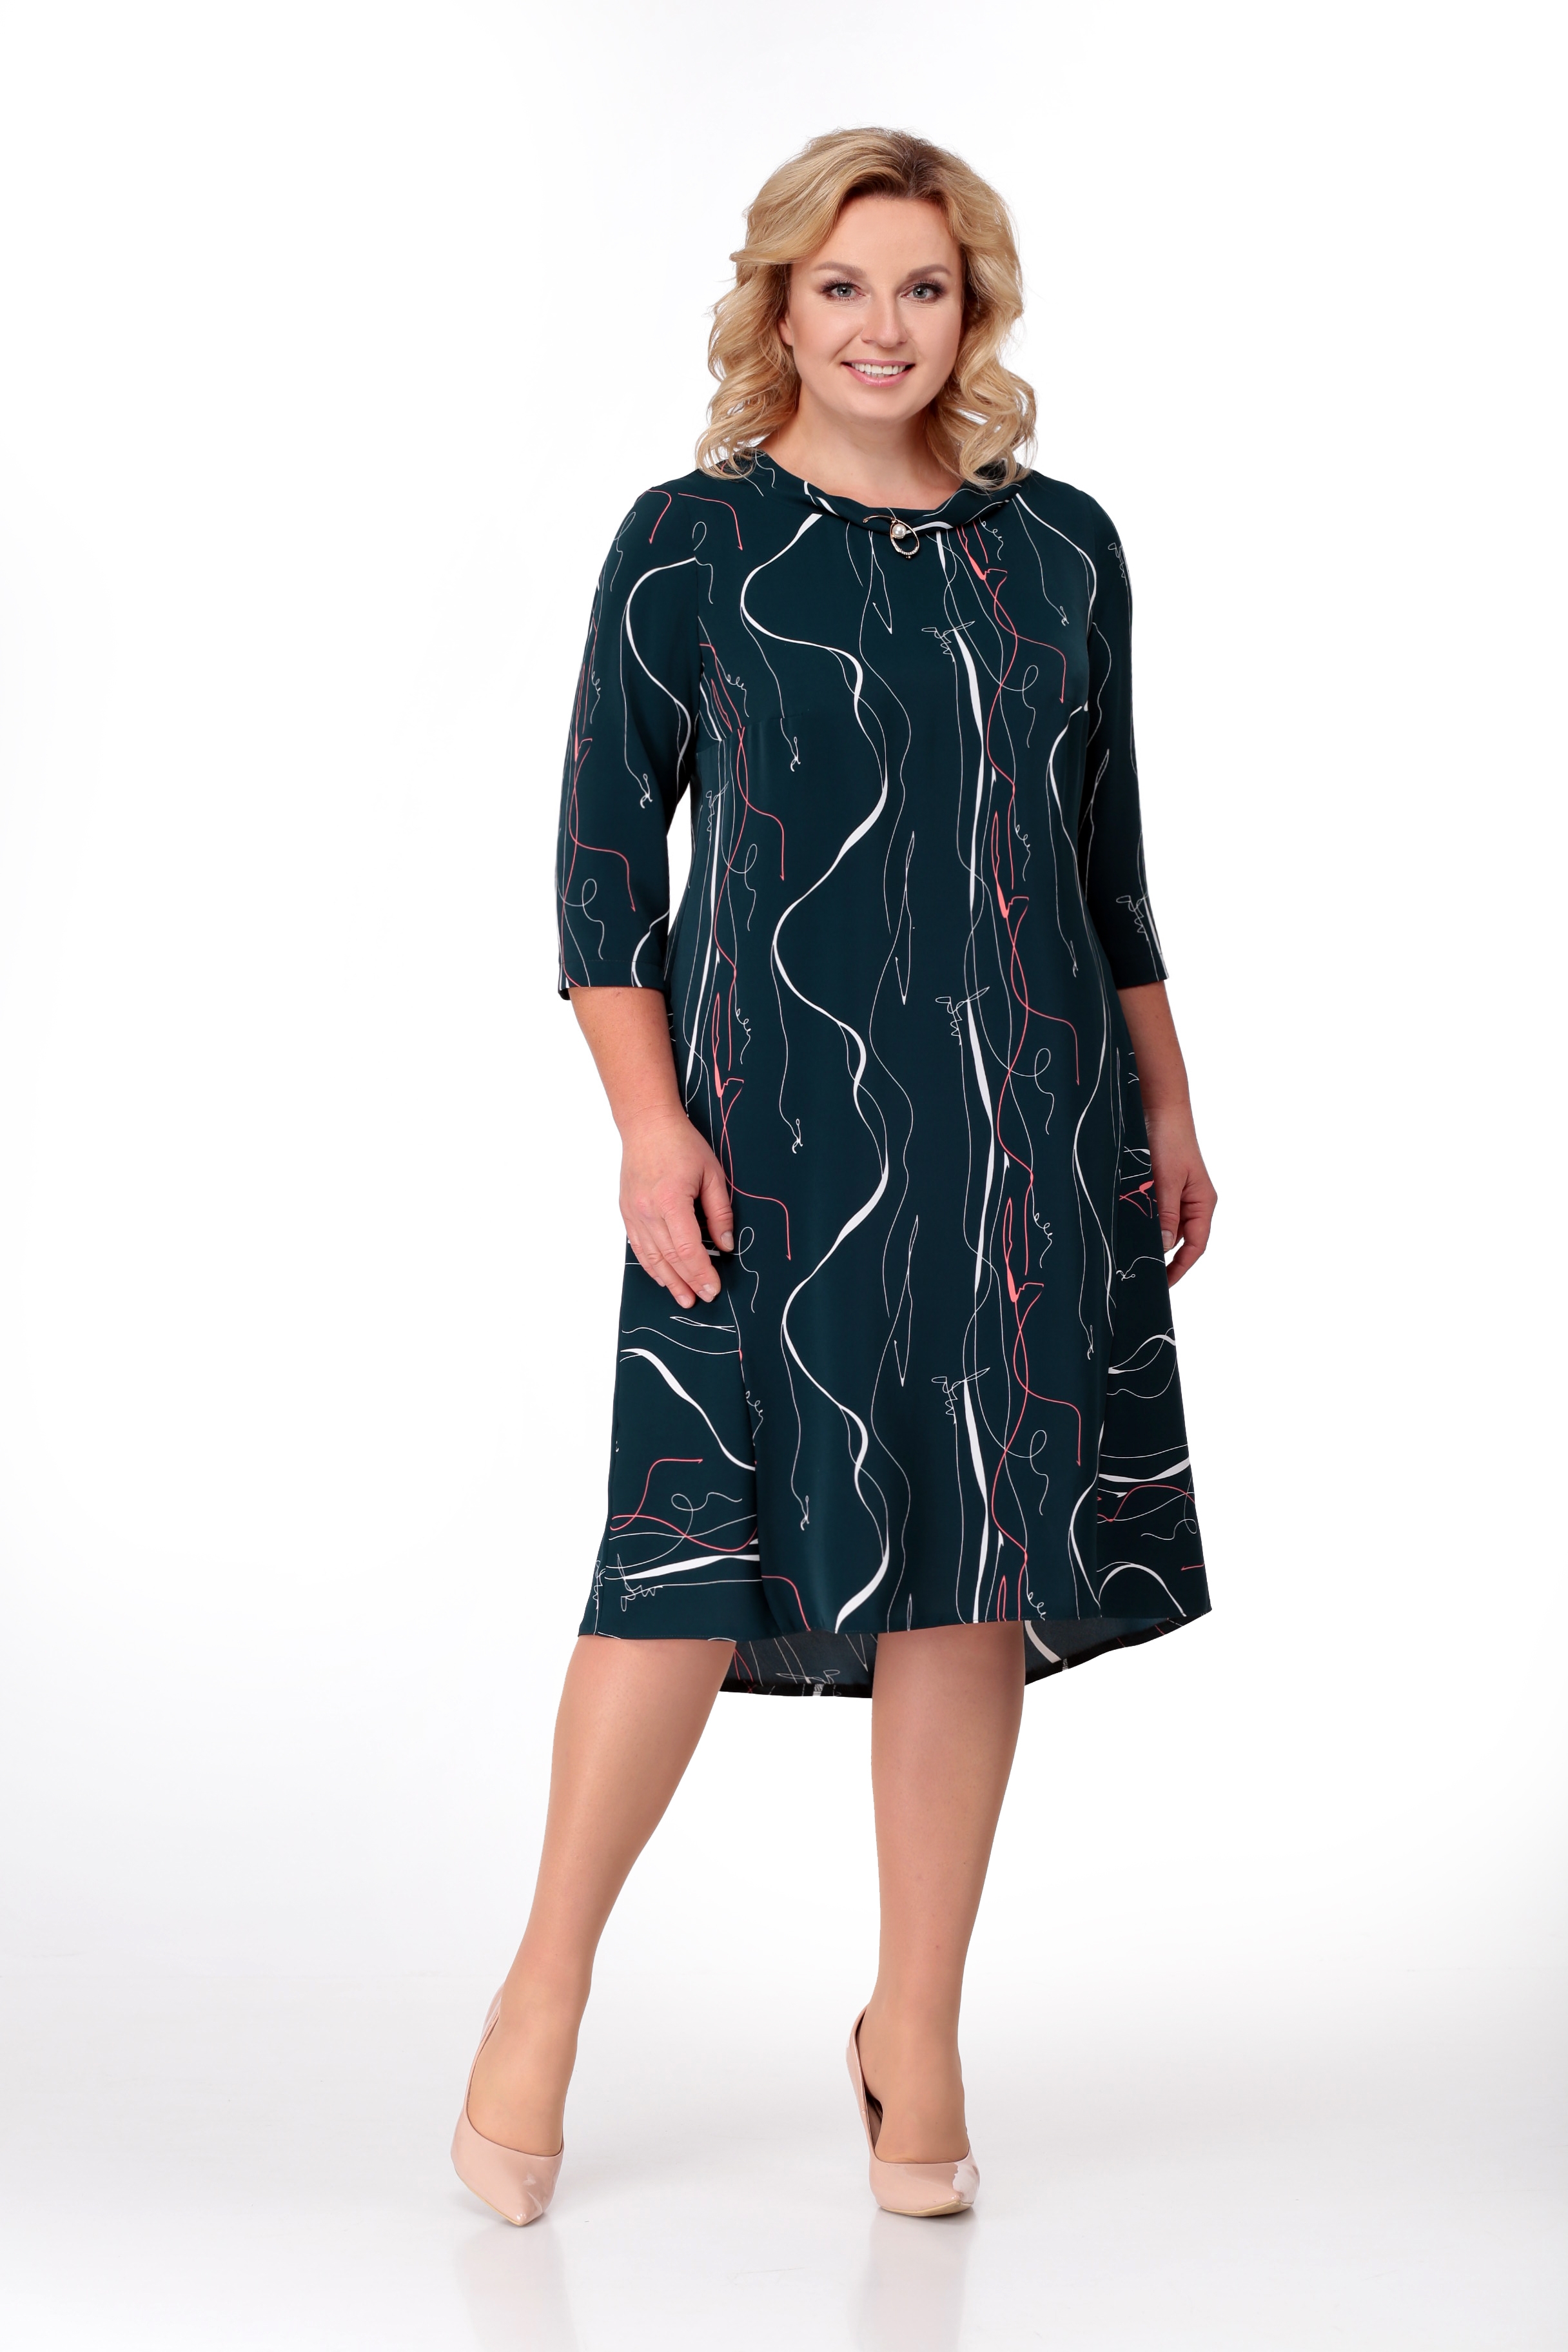 Текстильное платье с геометрическим рисунком ткани